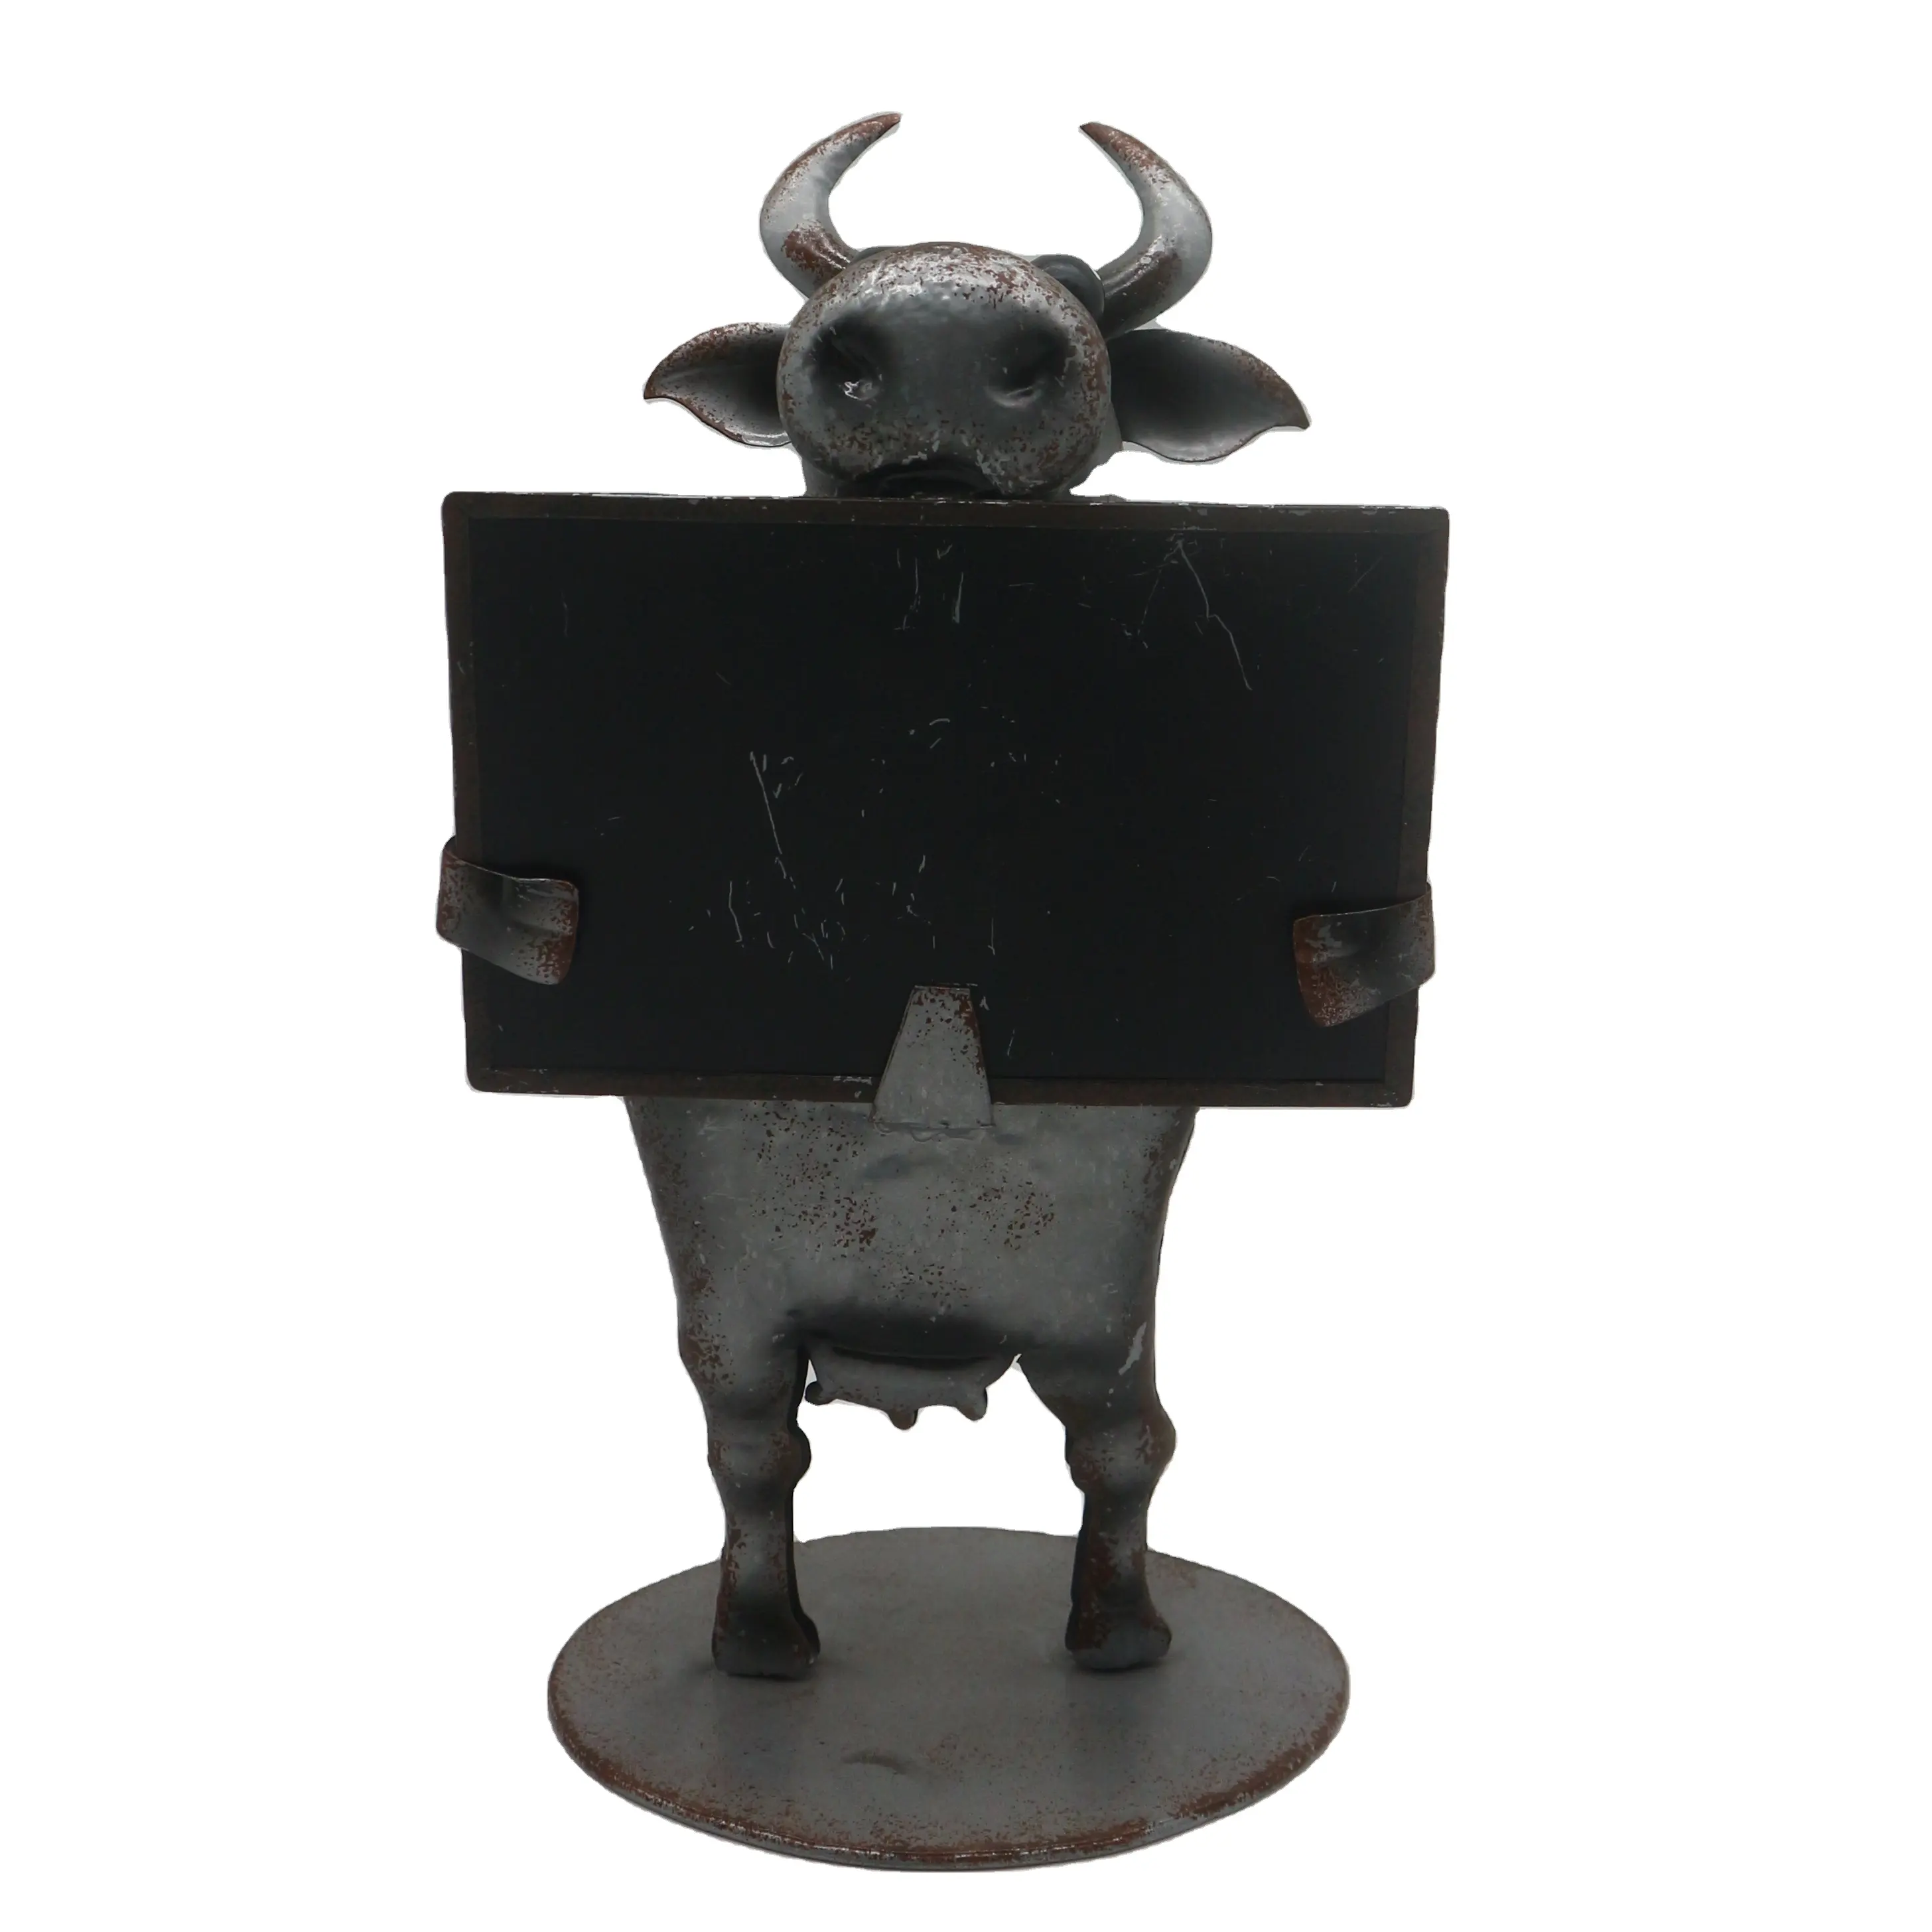 Artesanía de decoración de Metal personalizada, vaca adorable con tarjeta de sujeción para decoración del hogar